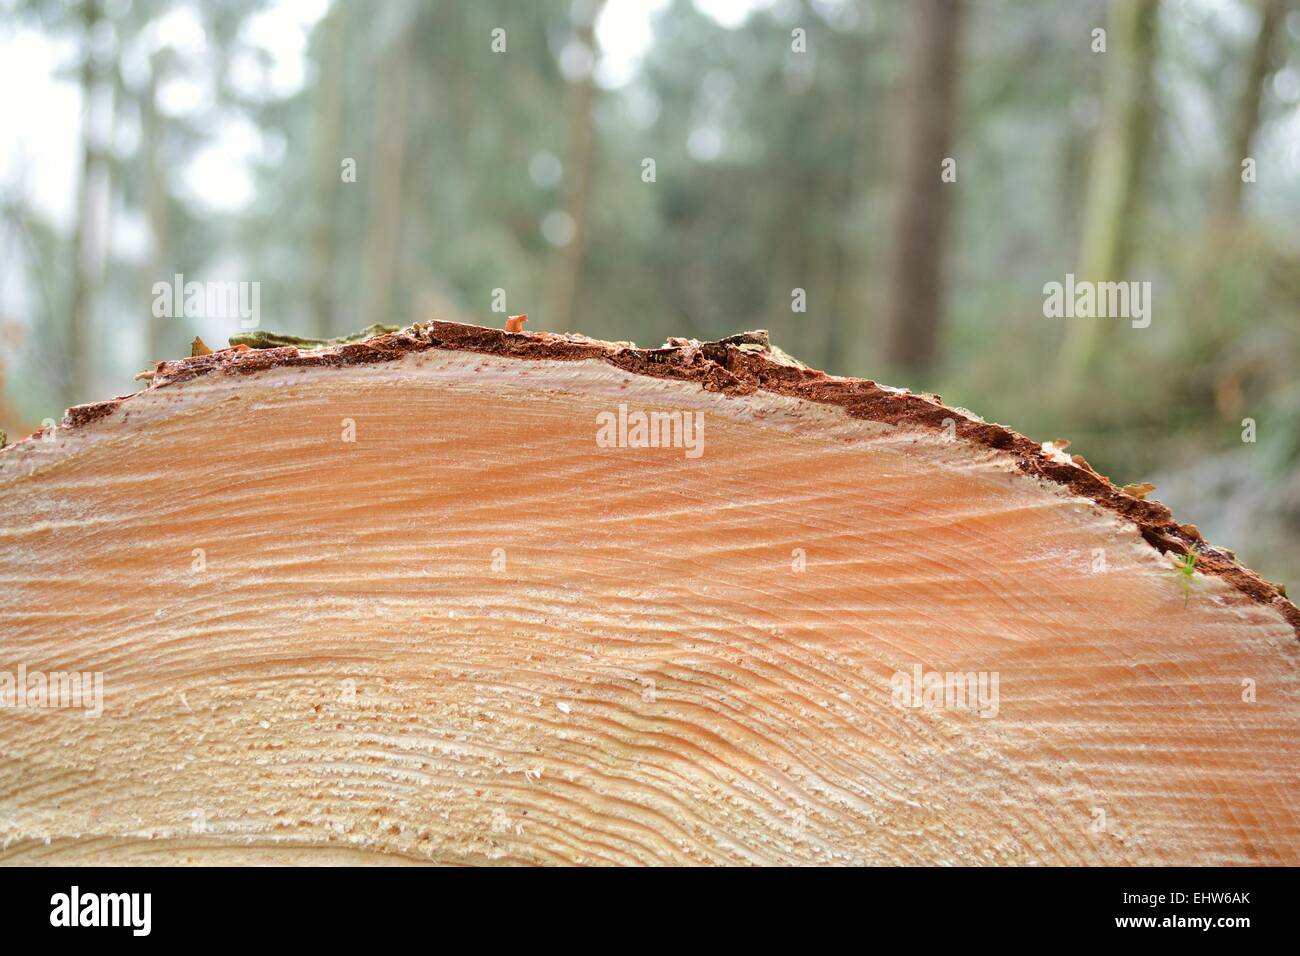 Detalle de un árbol-Sección transversal Foto de stock